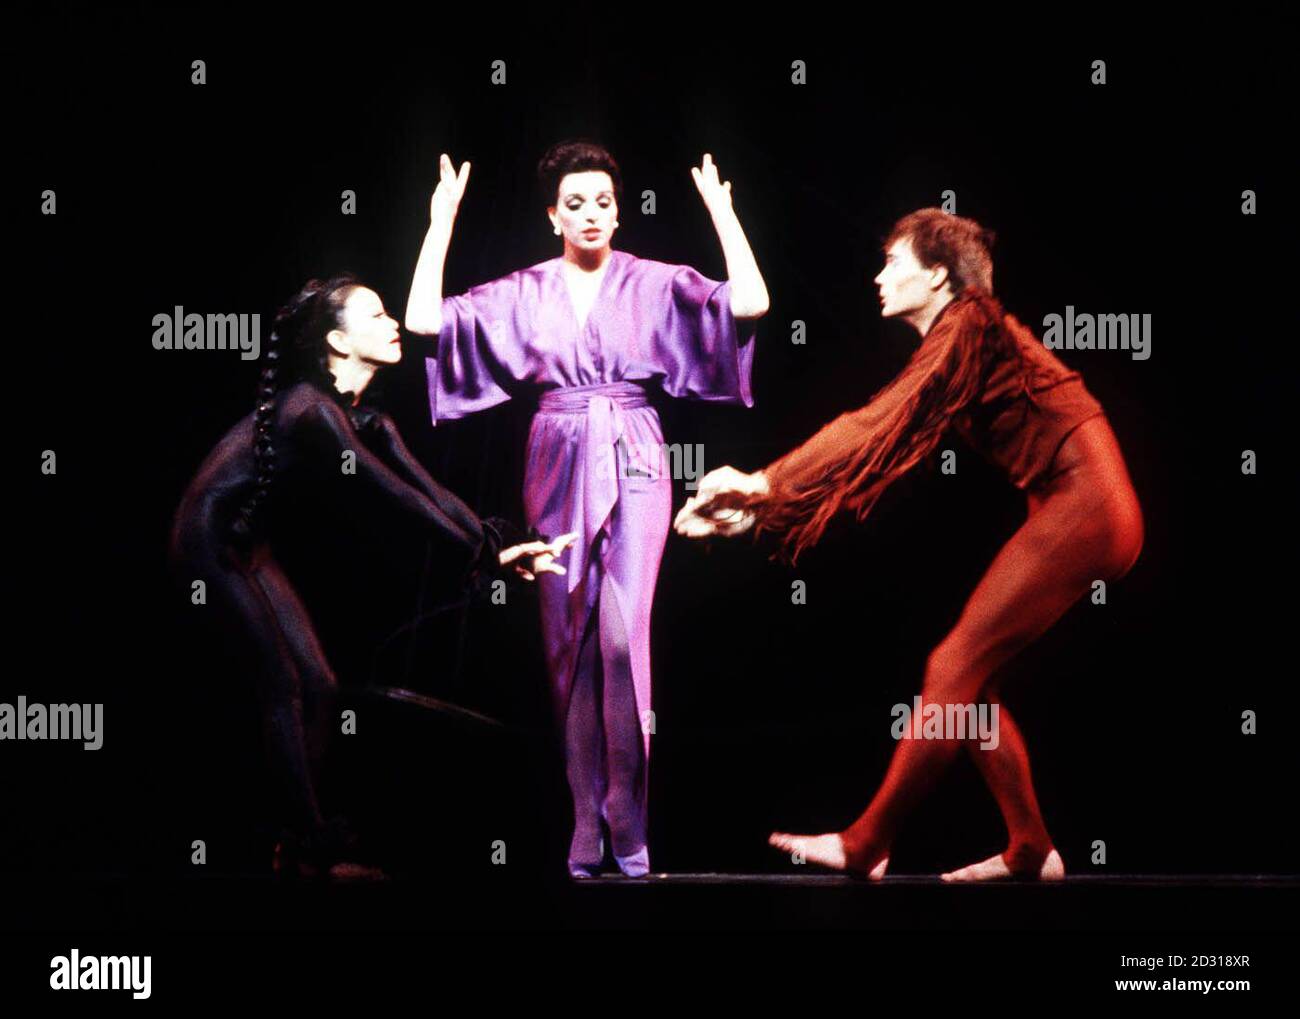 LIZA MINNELLI 1979: Intrattenitore americano Liza Minnelli (c) in scena alla Royal Opera House di Covent Garden, Londra, durante le prove per la produzione della Martha Grahm Dance Company di 'The Owl and the Pussycat'. La signorina Minnelli interpreta la narratrice. Foto Stock